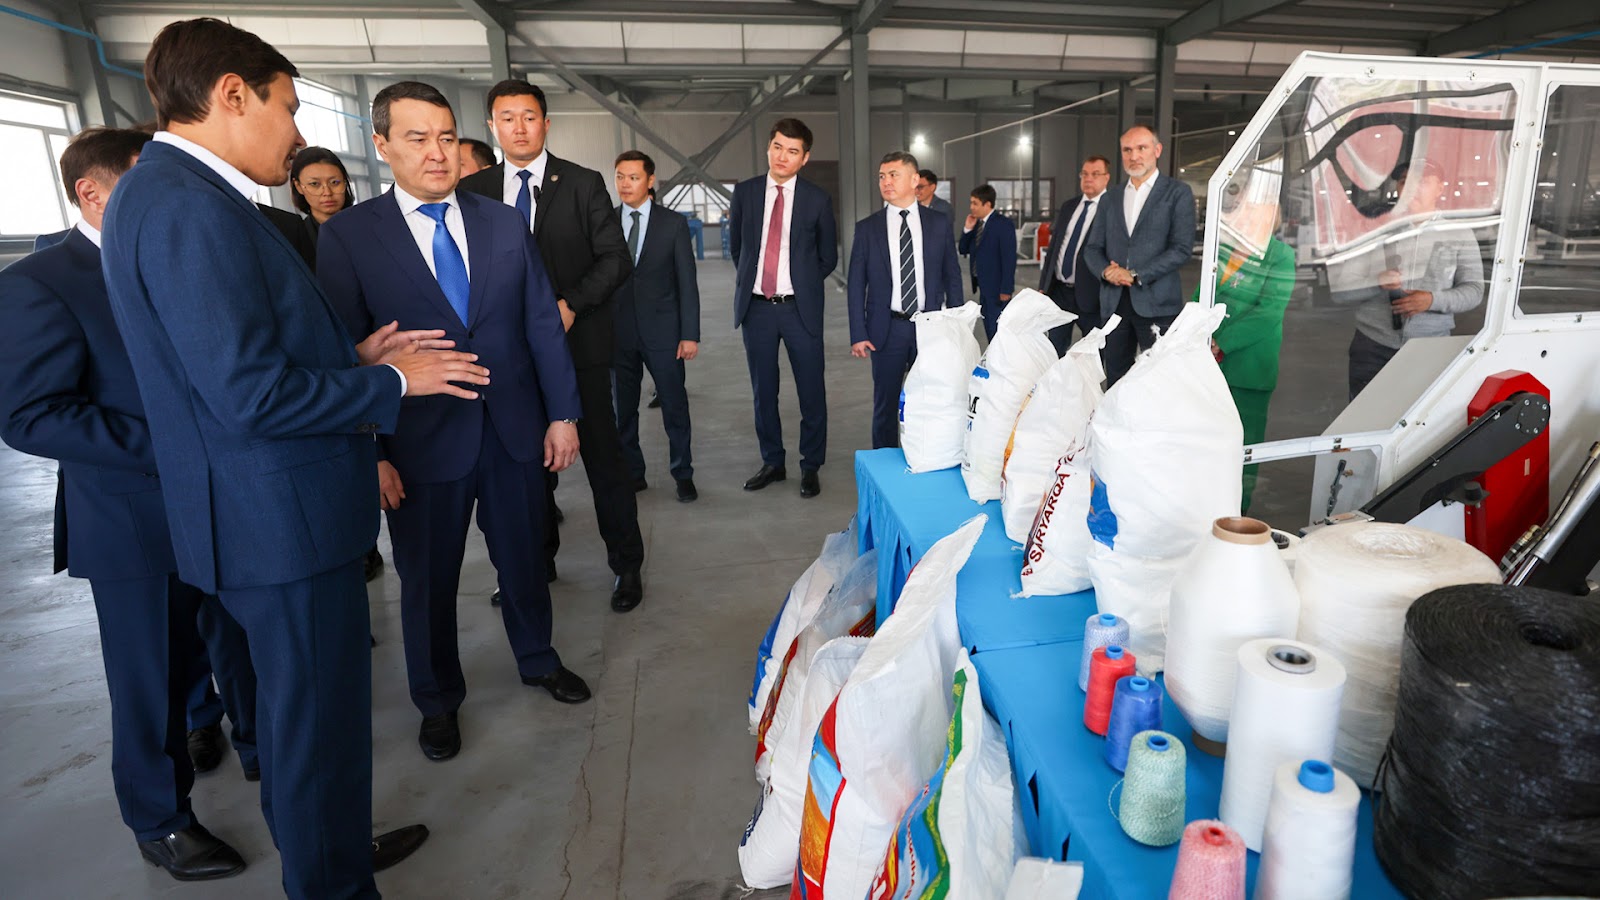 Үкімет басшысы: Ақмола облысында тамақ өнімдерінің өндірісі жақсы дамыған